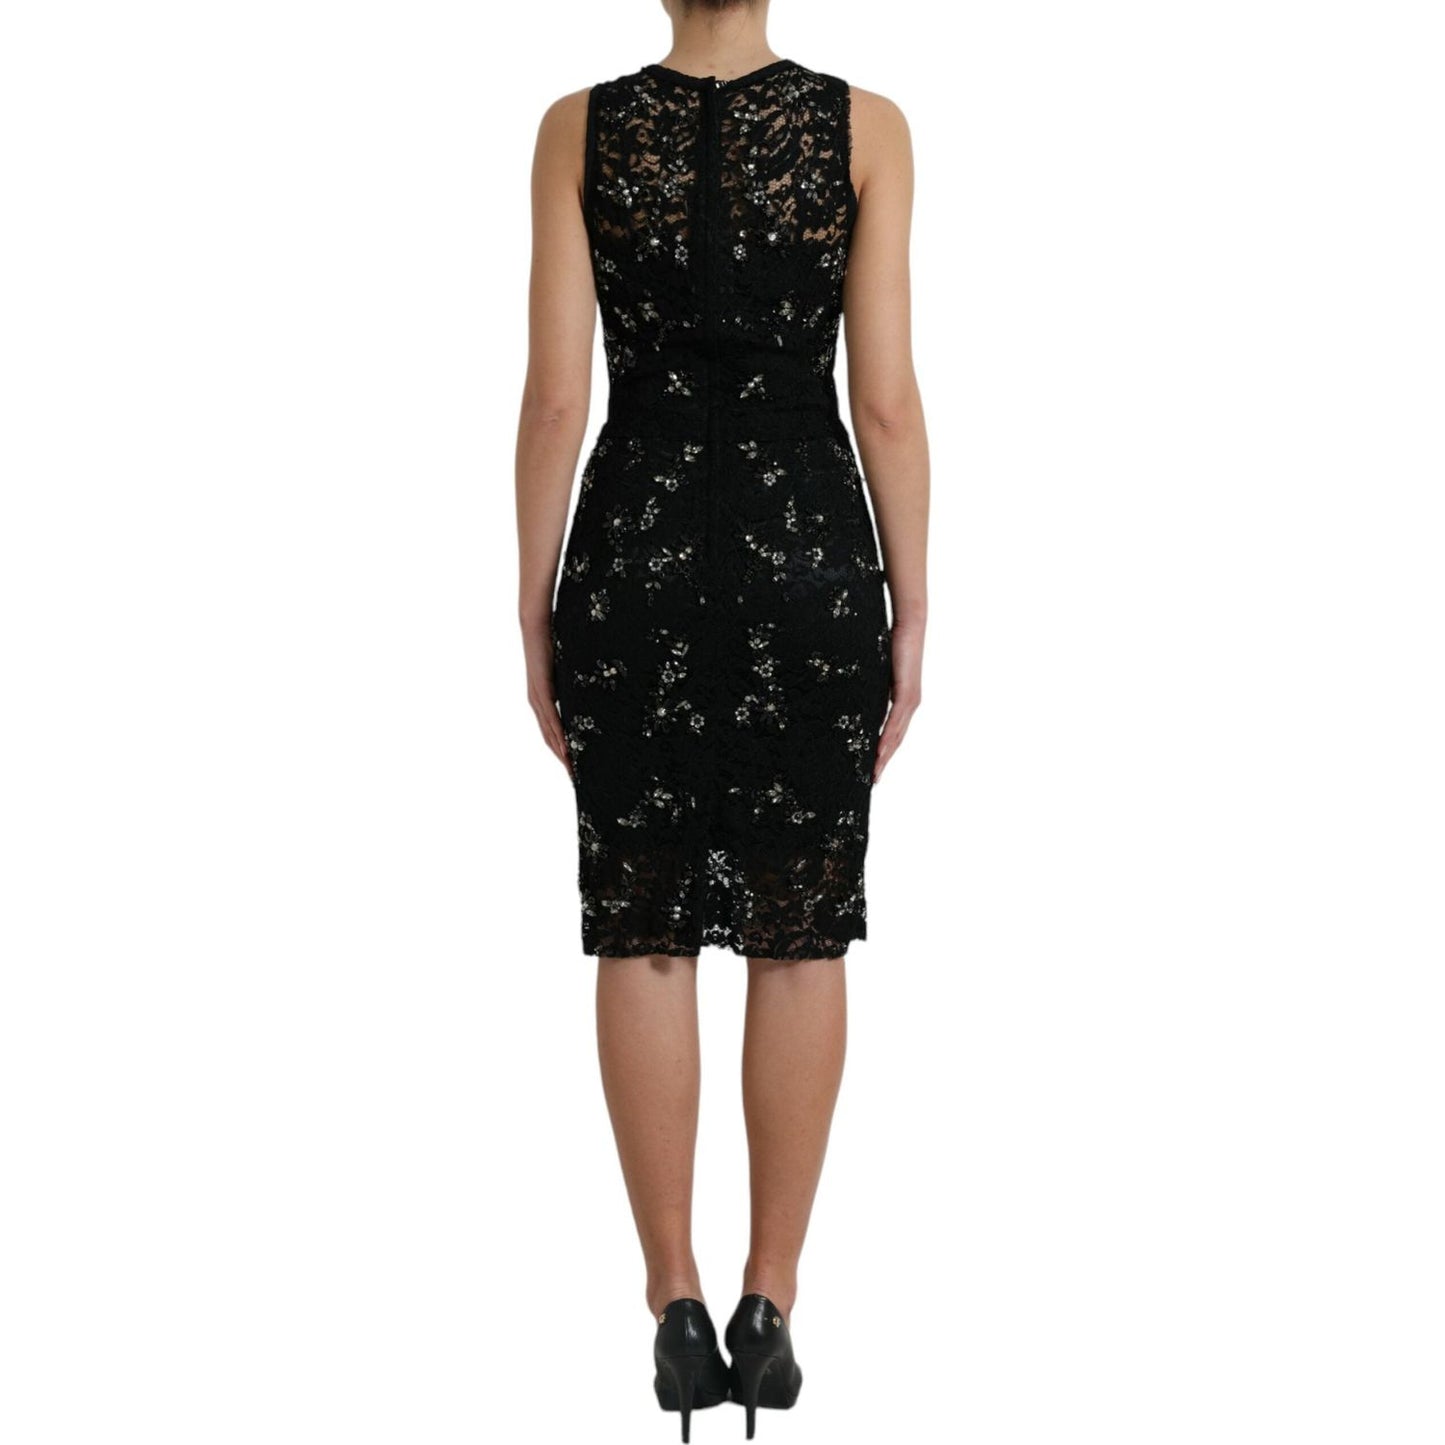 Dolce & Gabbana Exquisite Black Floral Lace Crystal Sheath Dress exquisite-black-floral-lace-crystal-sheath-dress